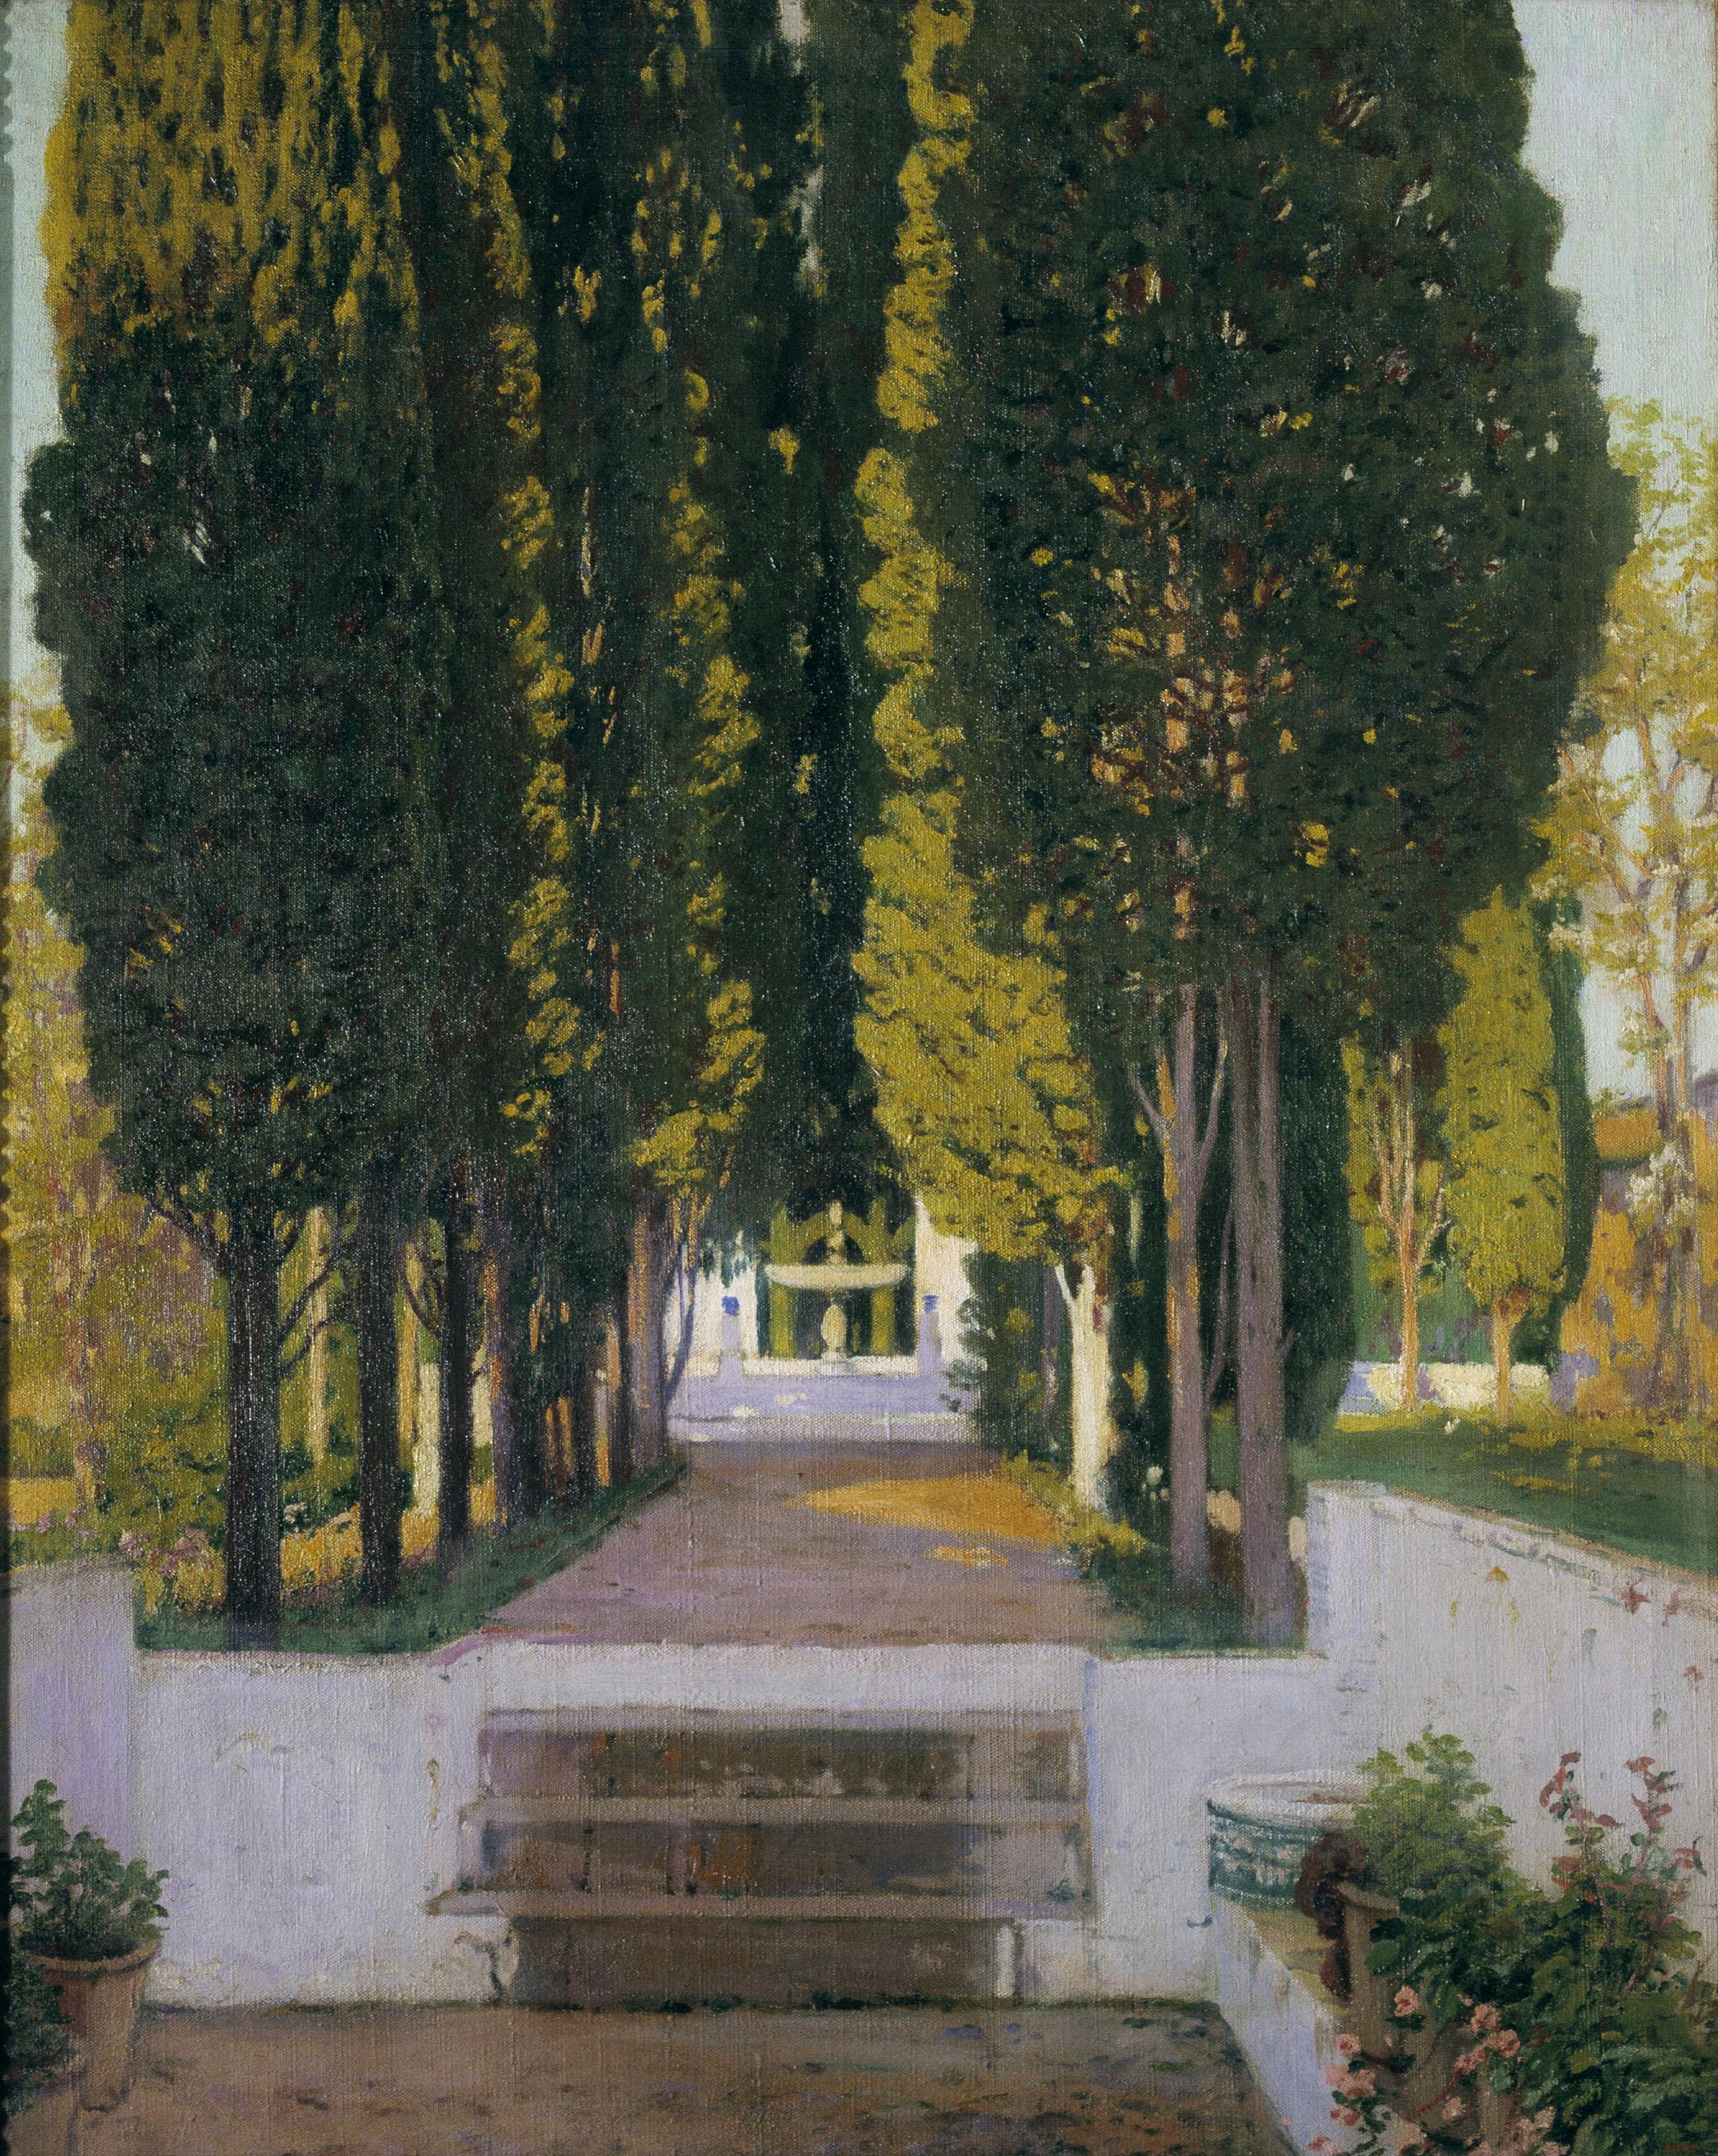 Santiago Rusiñol, Jardín del Generalife, 1909